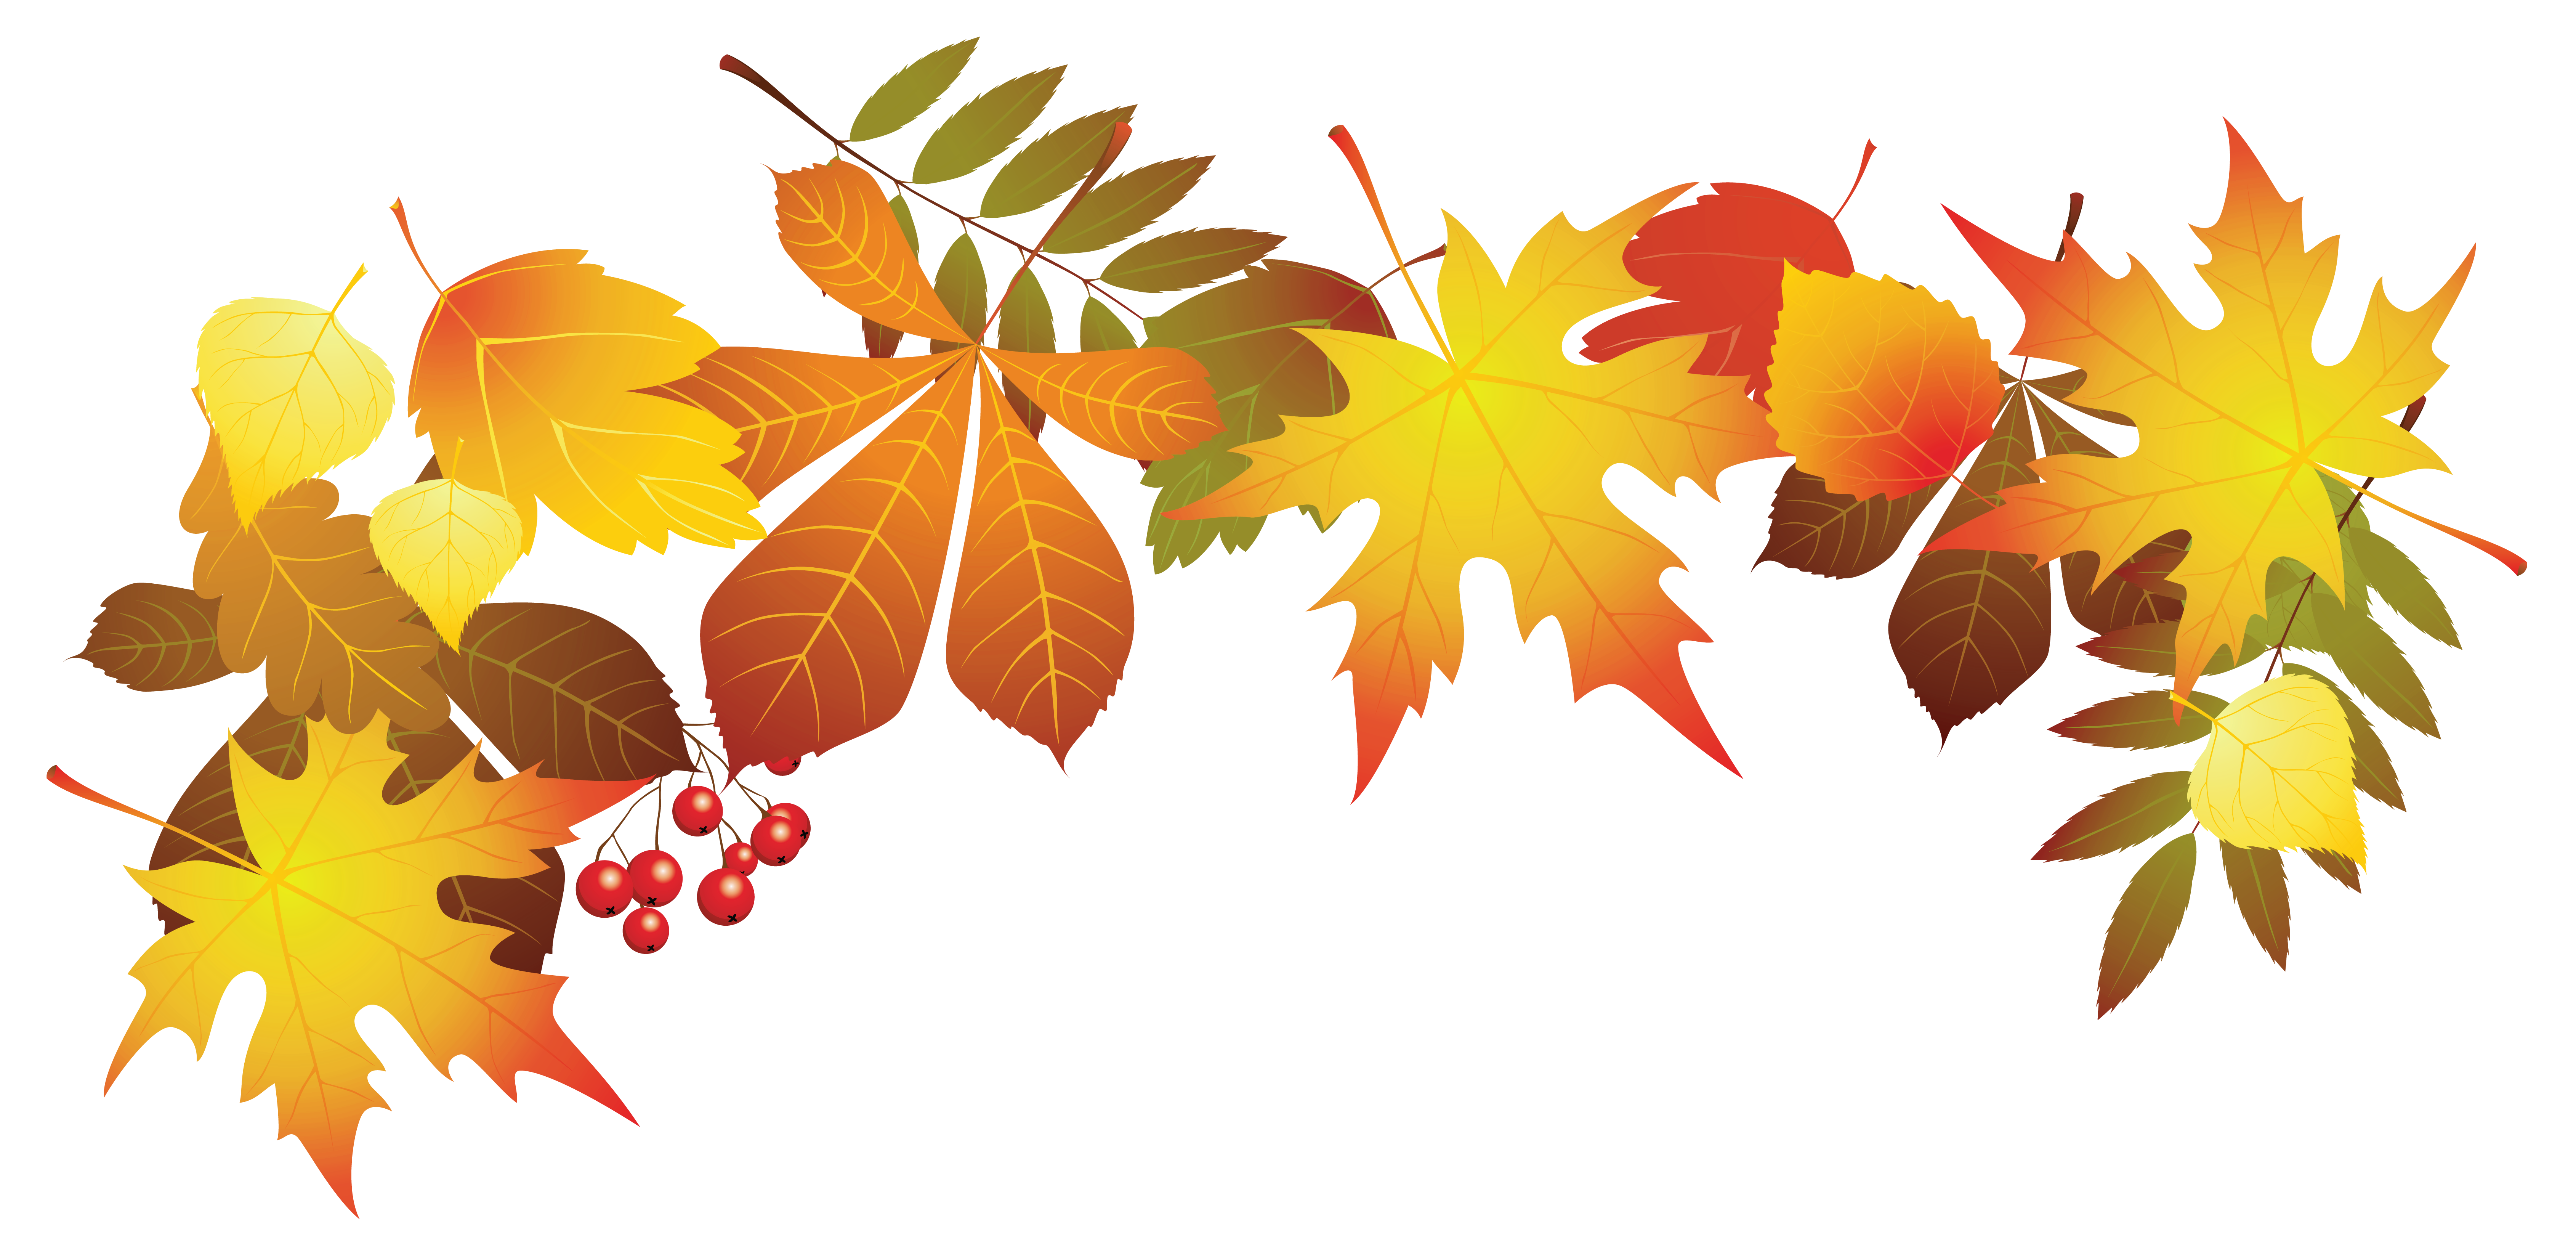 Autumn leaf color Clip art.